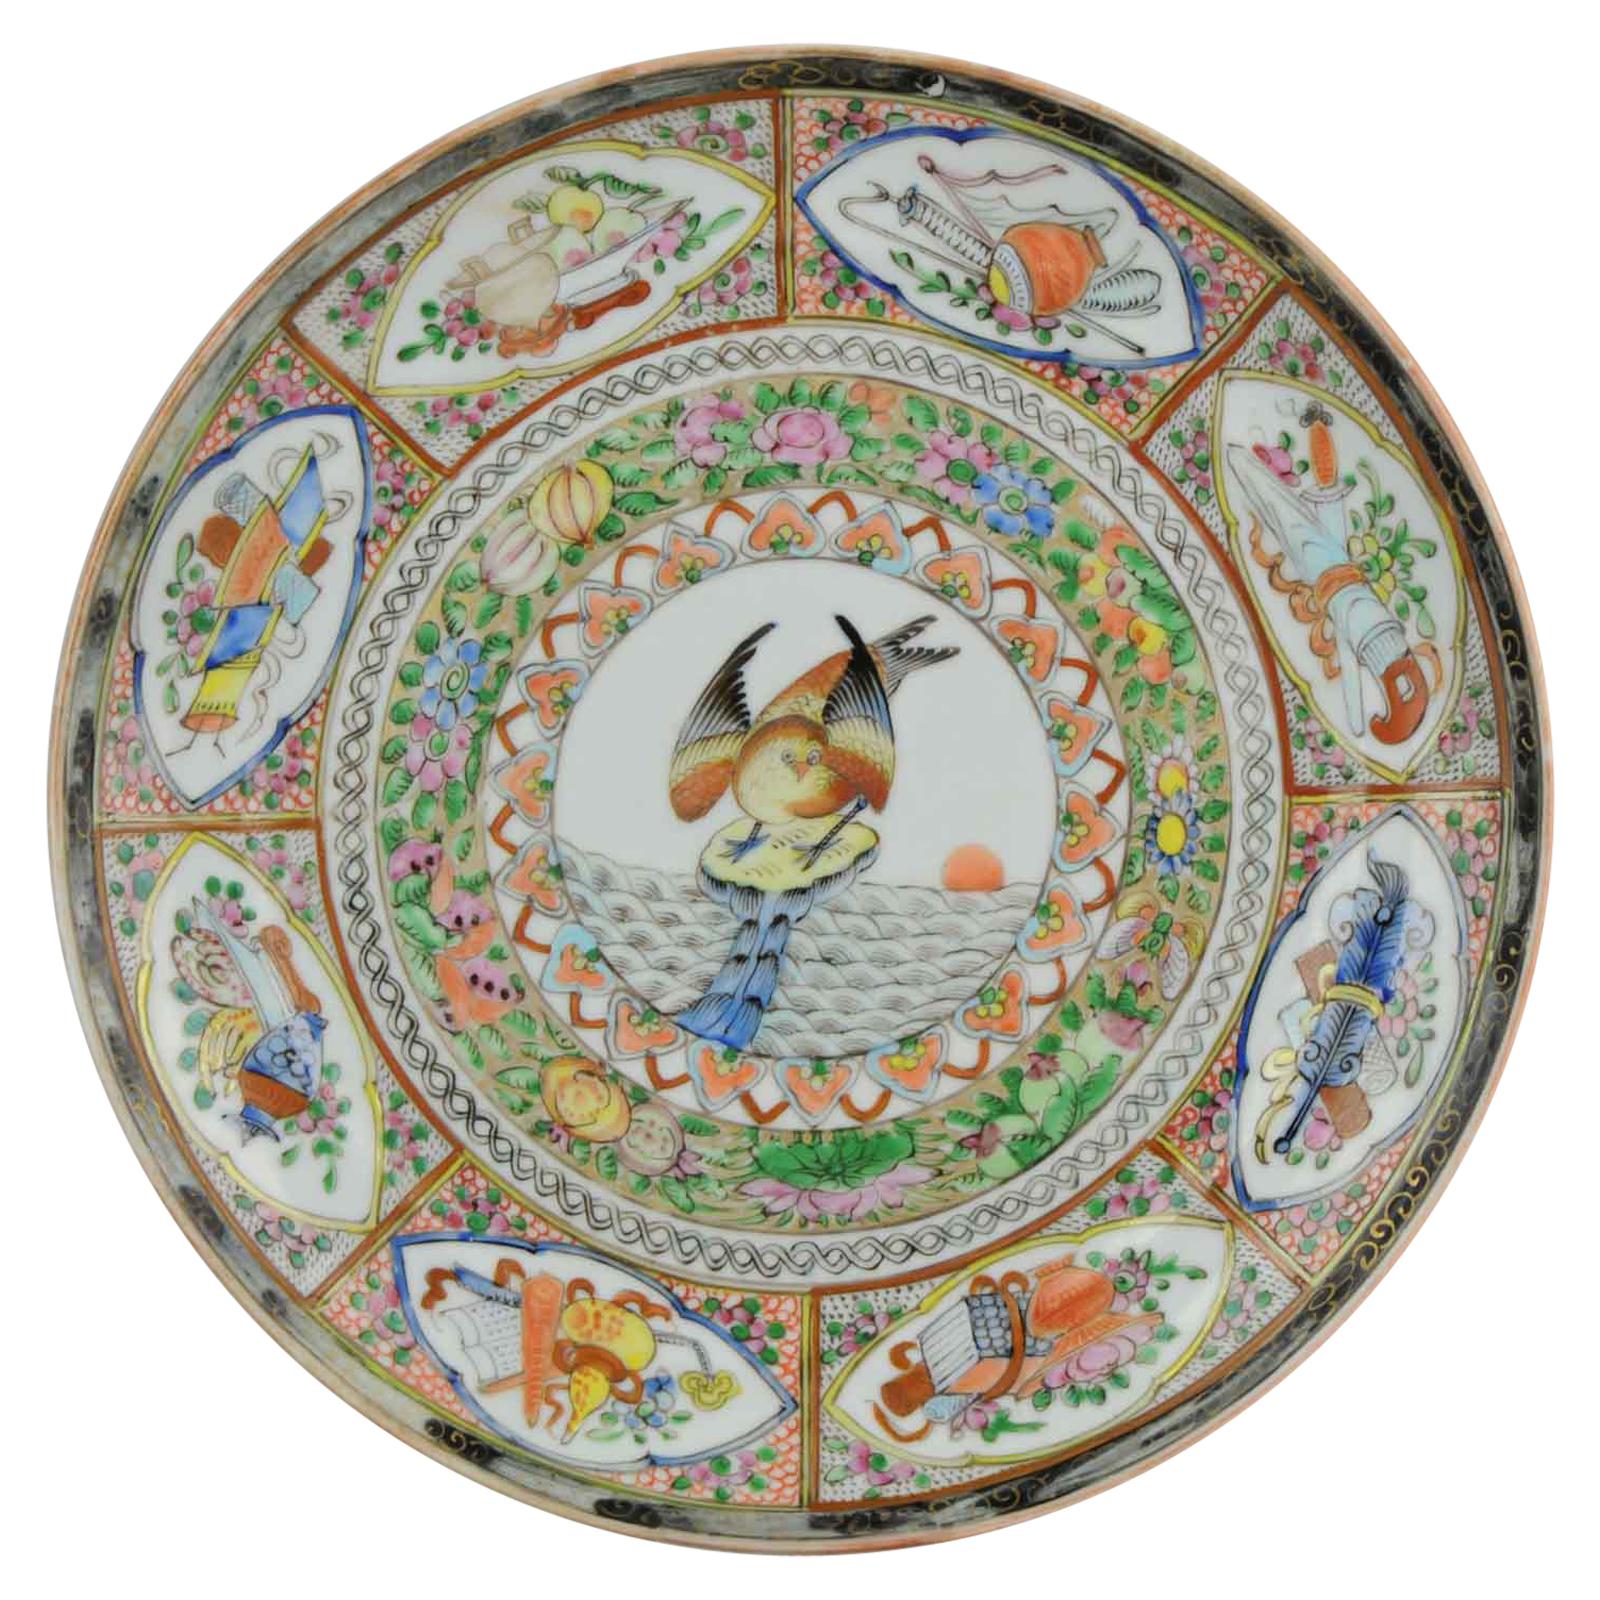 Assiette oiseau cantonaise ancienne 19ème-début 20ème siècle en porcelaine chinoise